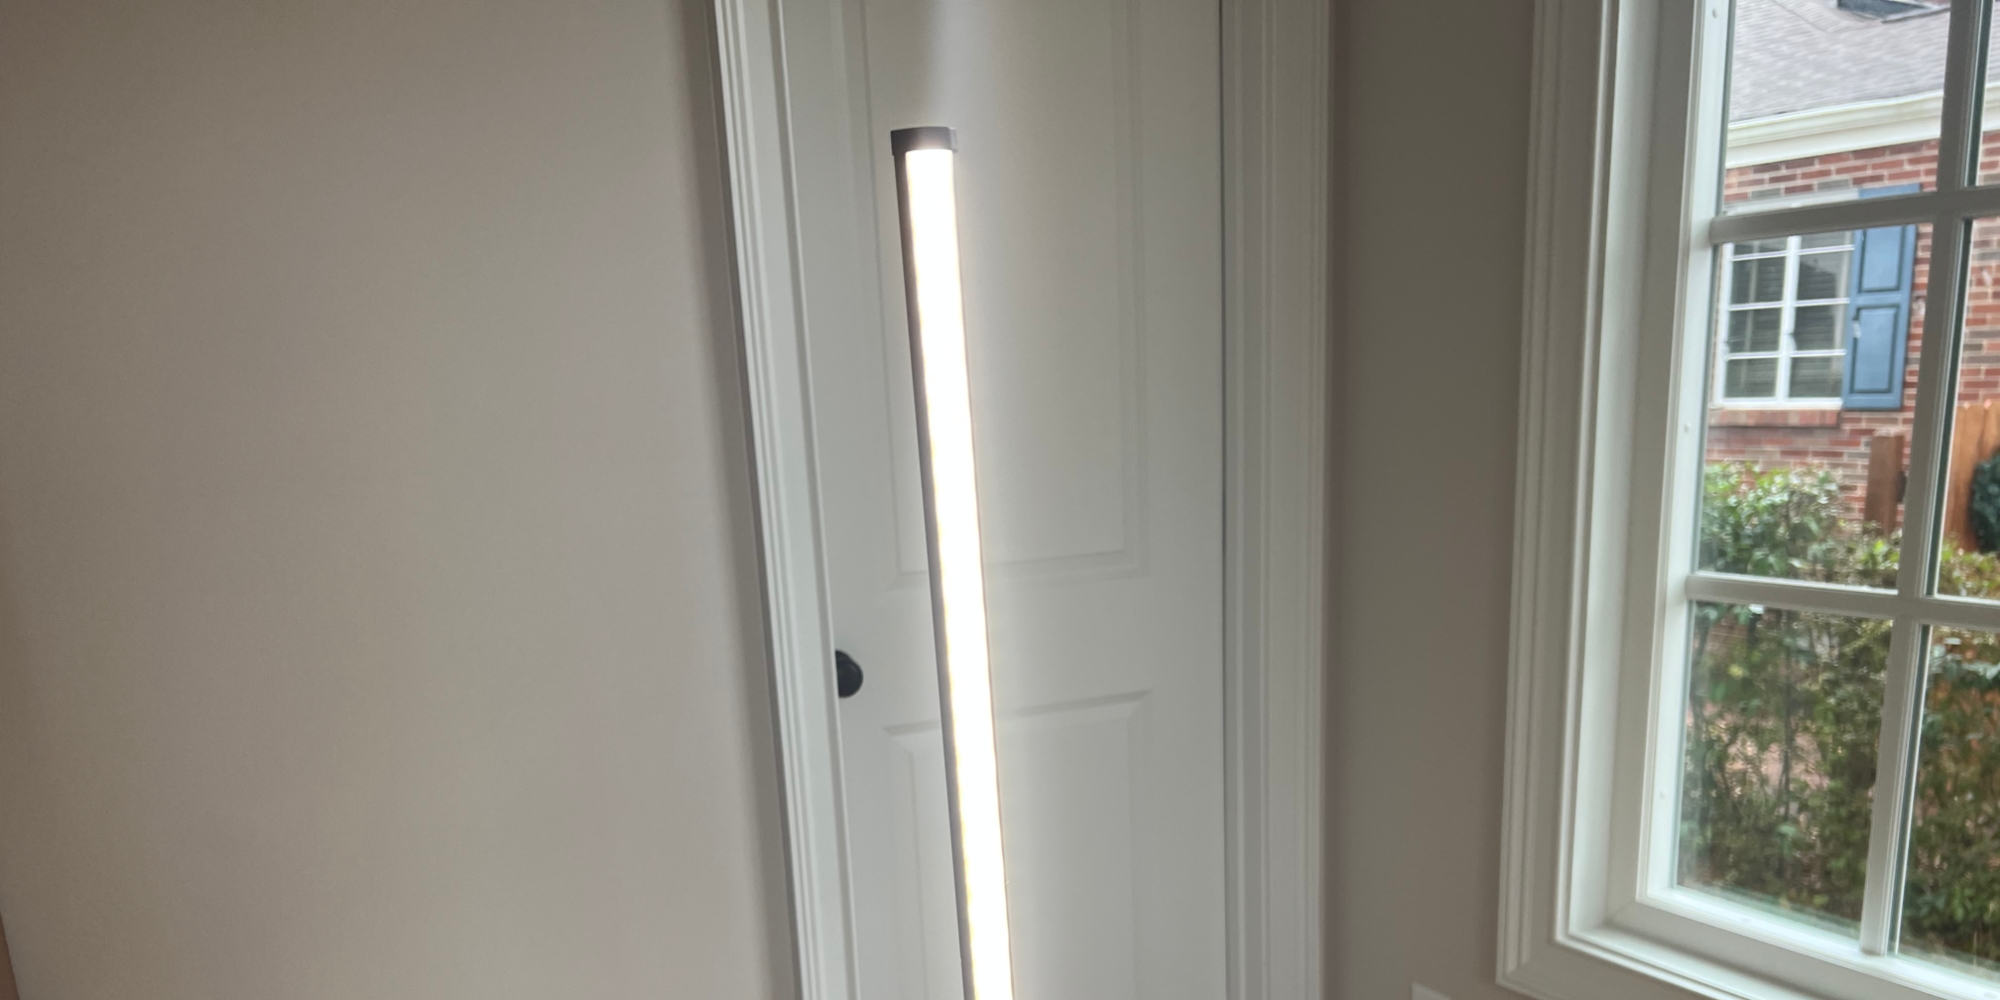 VOCOlinc LED floor lamp review